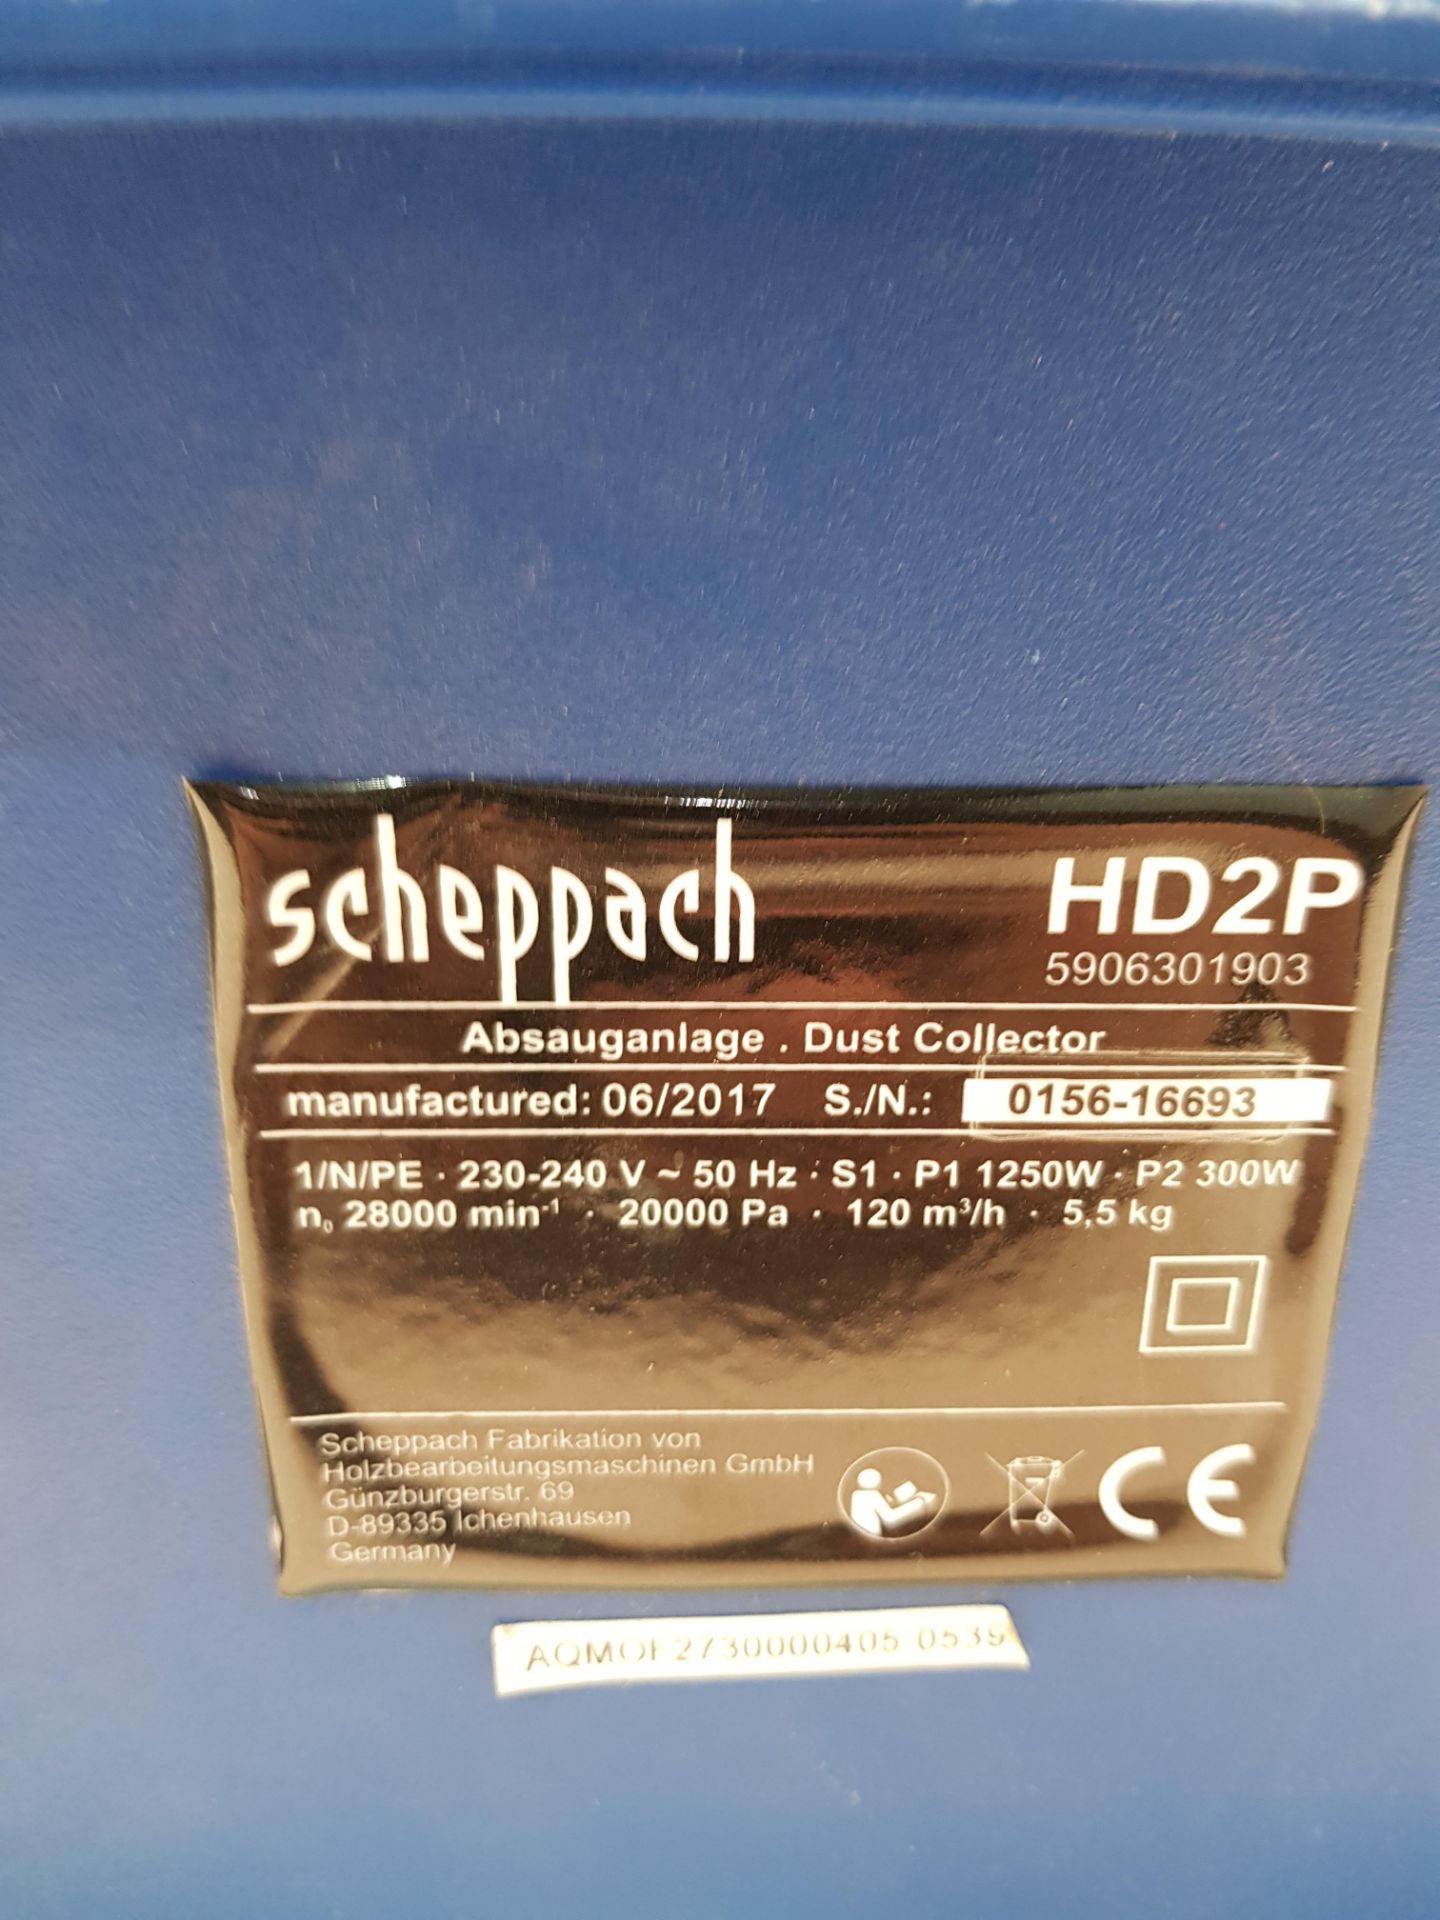 Scheppach Dust Collector S/N: 0156-16693 - Bild 3 aus 3